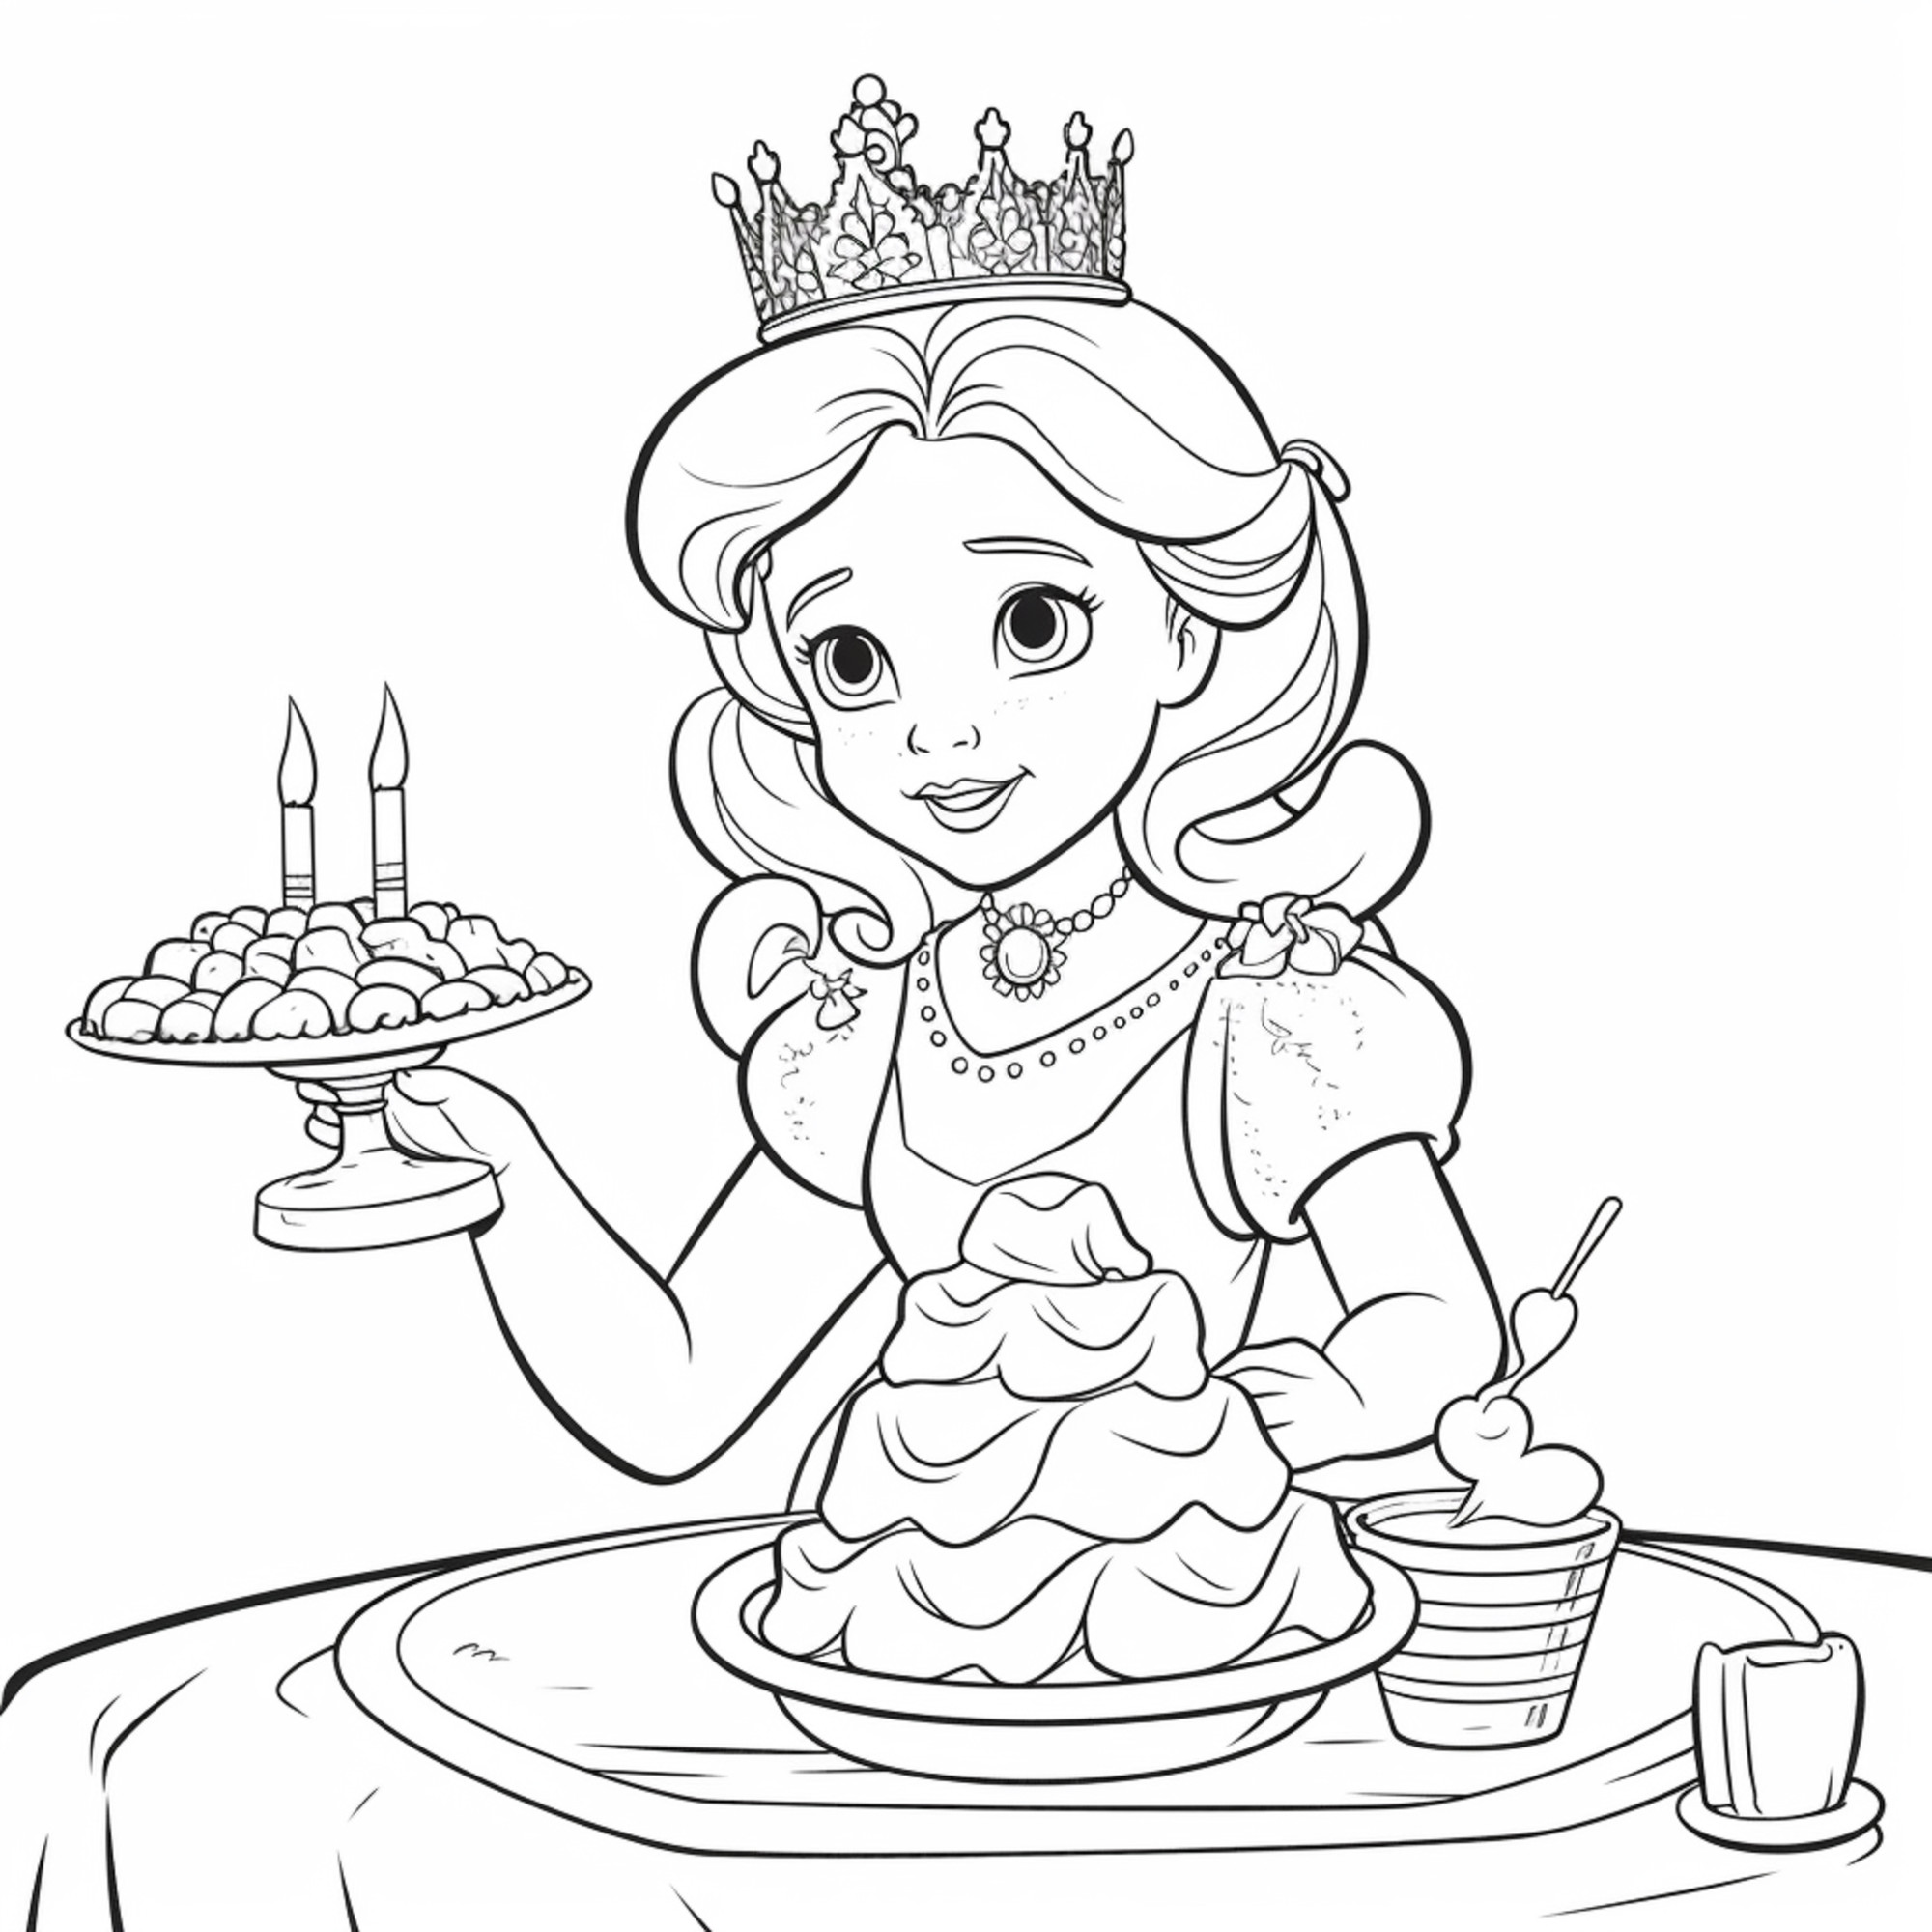 Раскраска для детей: принцесса держащей торт со свечами